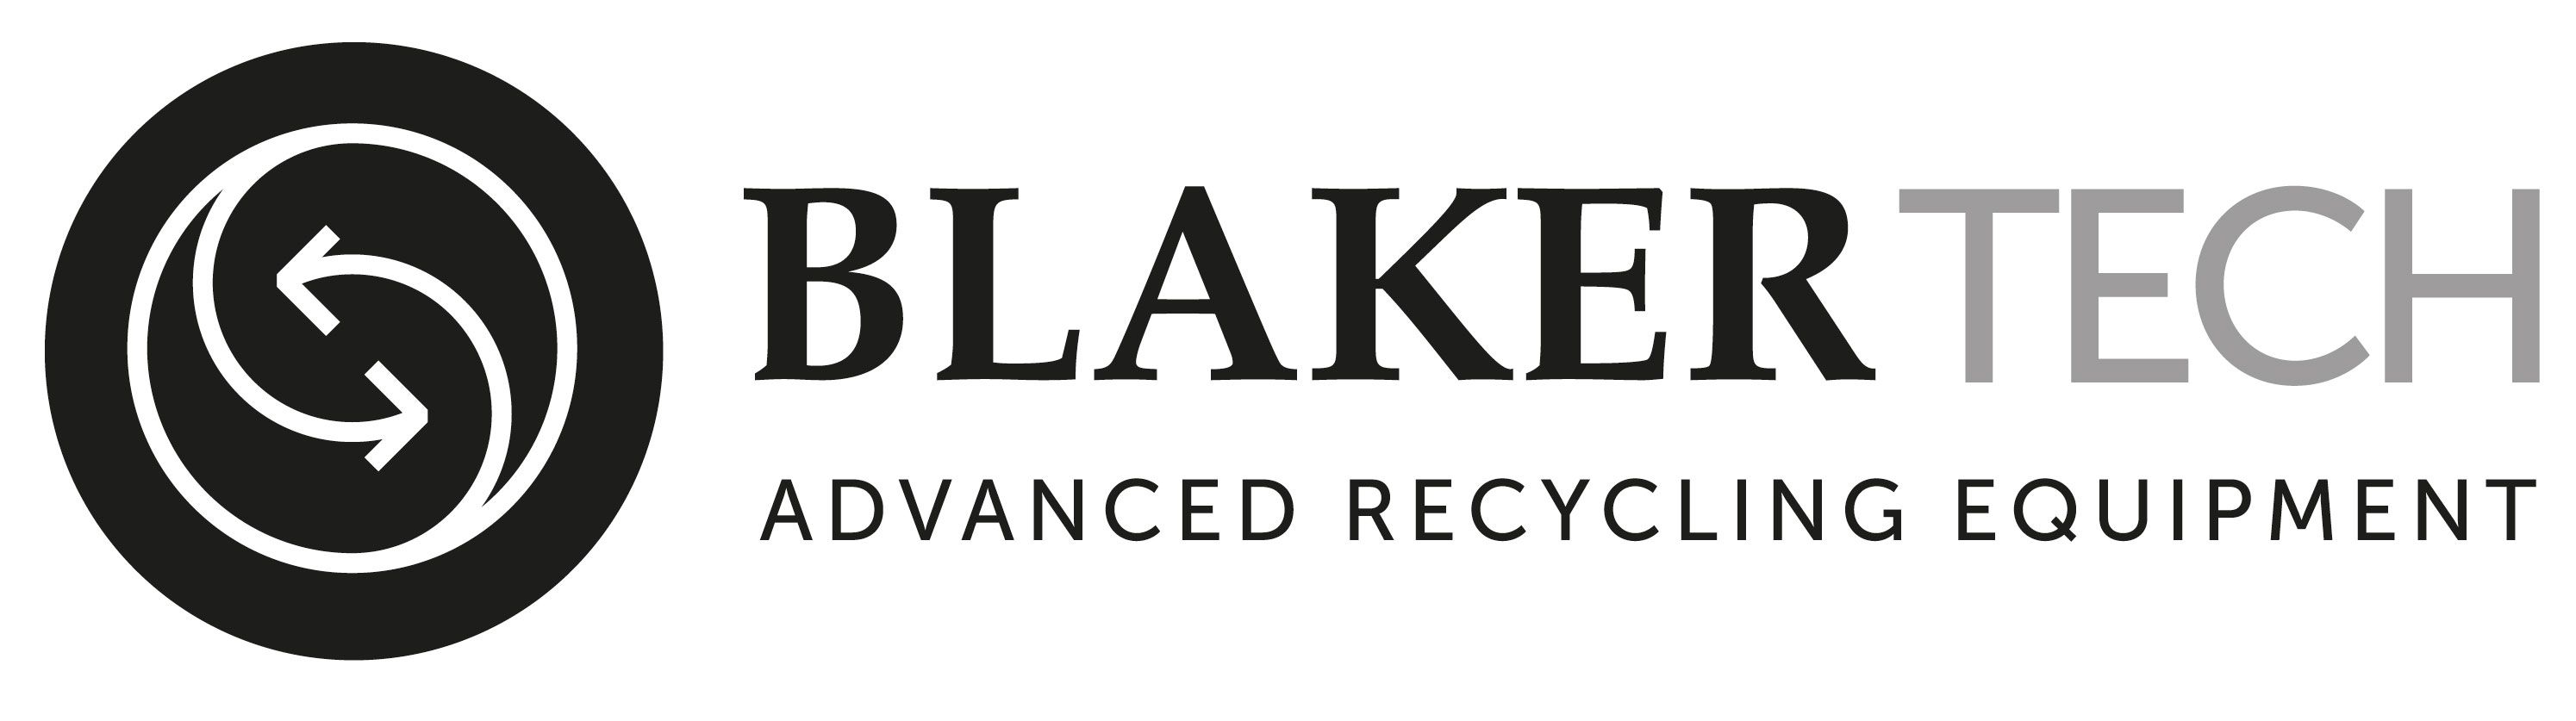 BlakerTech Advanced Recycling Equipment